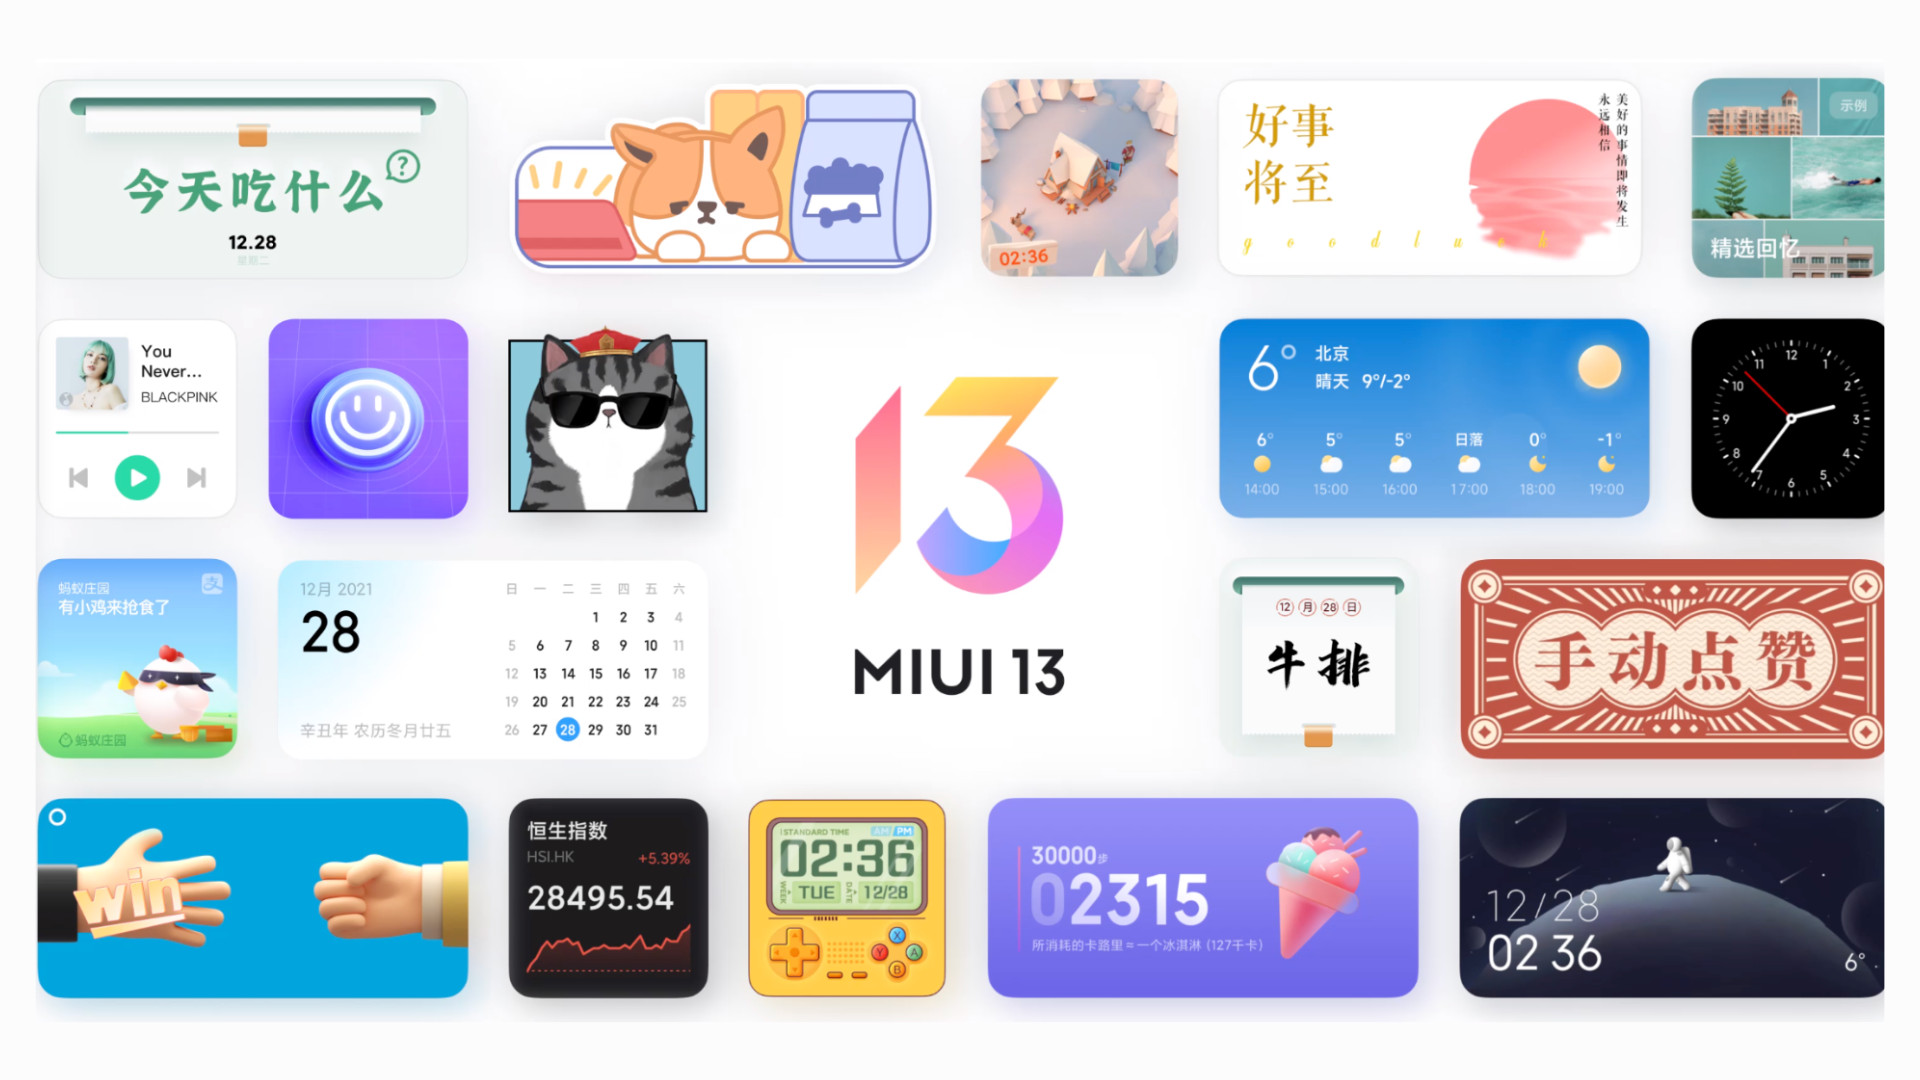 Les très vieux smartphones Xiaomi ont le firmware MIUI 13 Experience